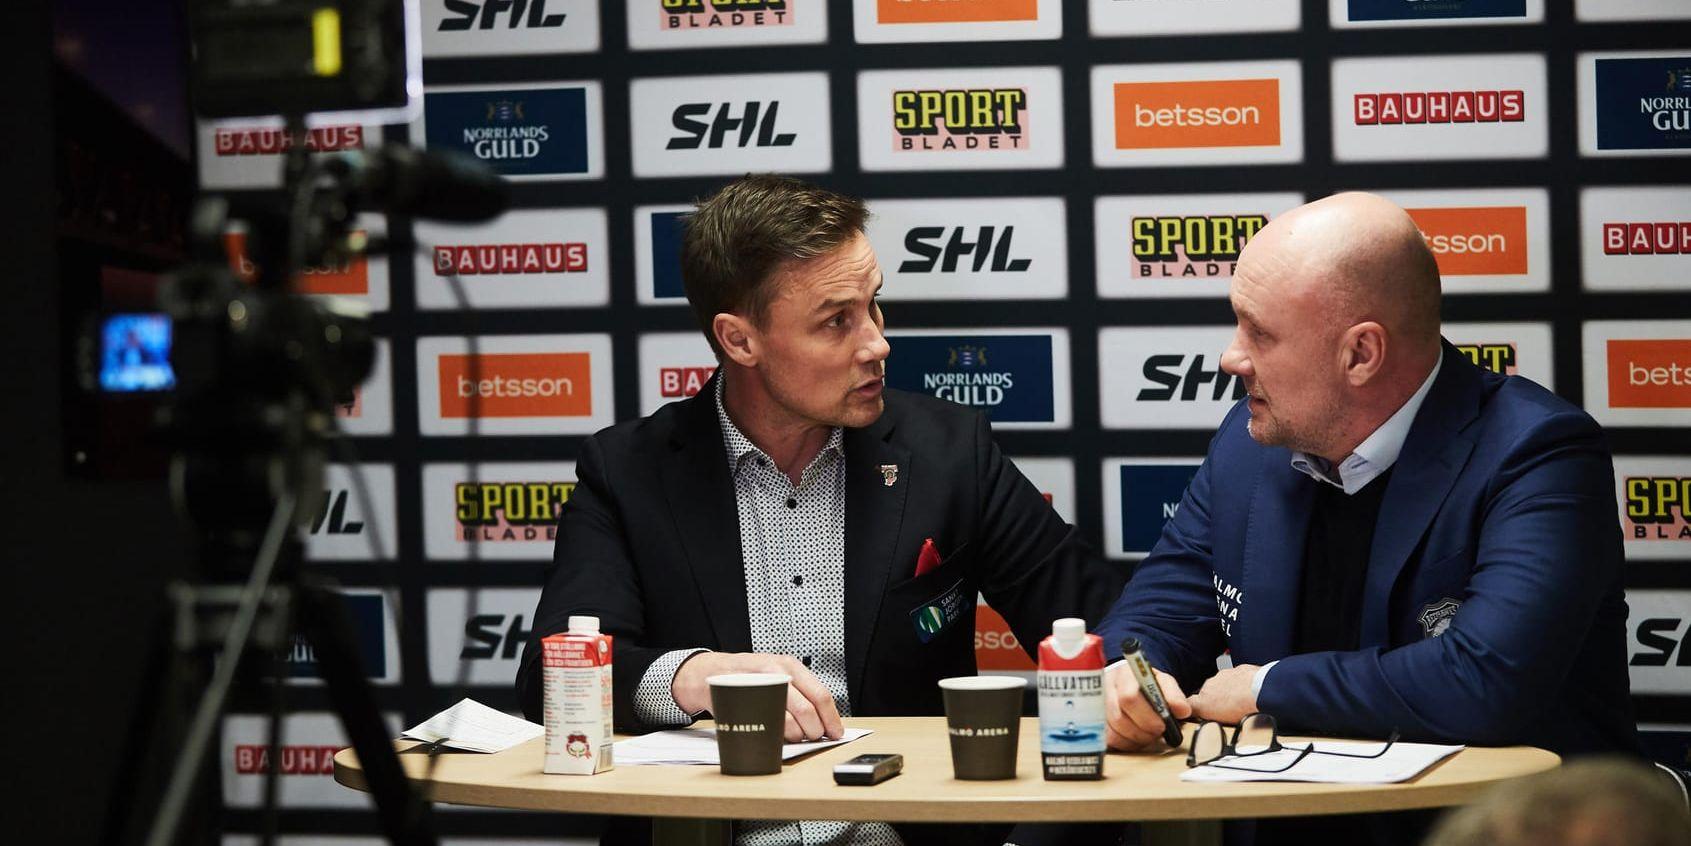 Simon Hjalmarssons tackling skapade debatt mellan Frölundas tränare Roger Rönnberg och Malmös dito Peter Andersson efter matchen.